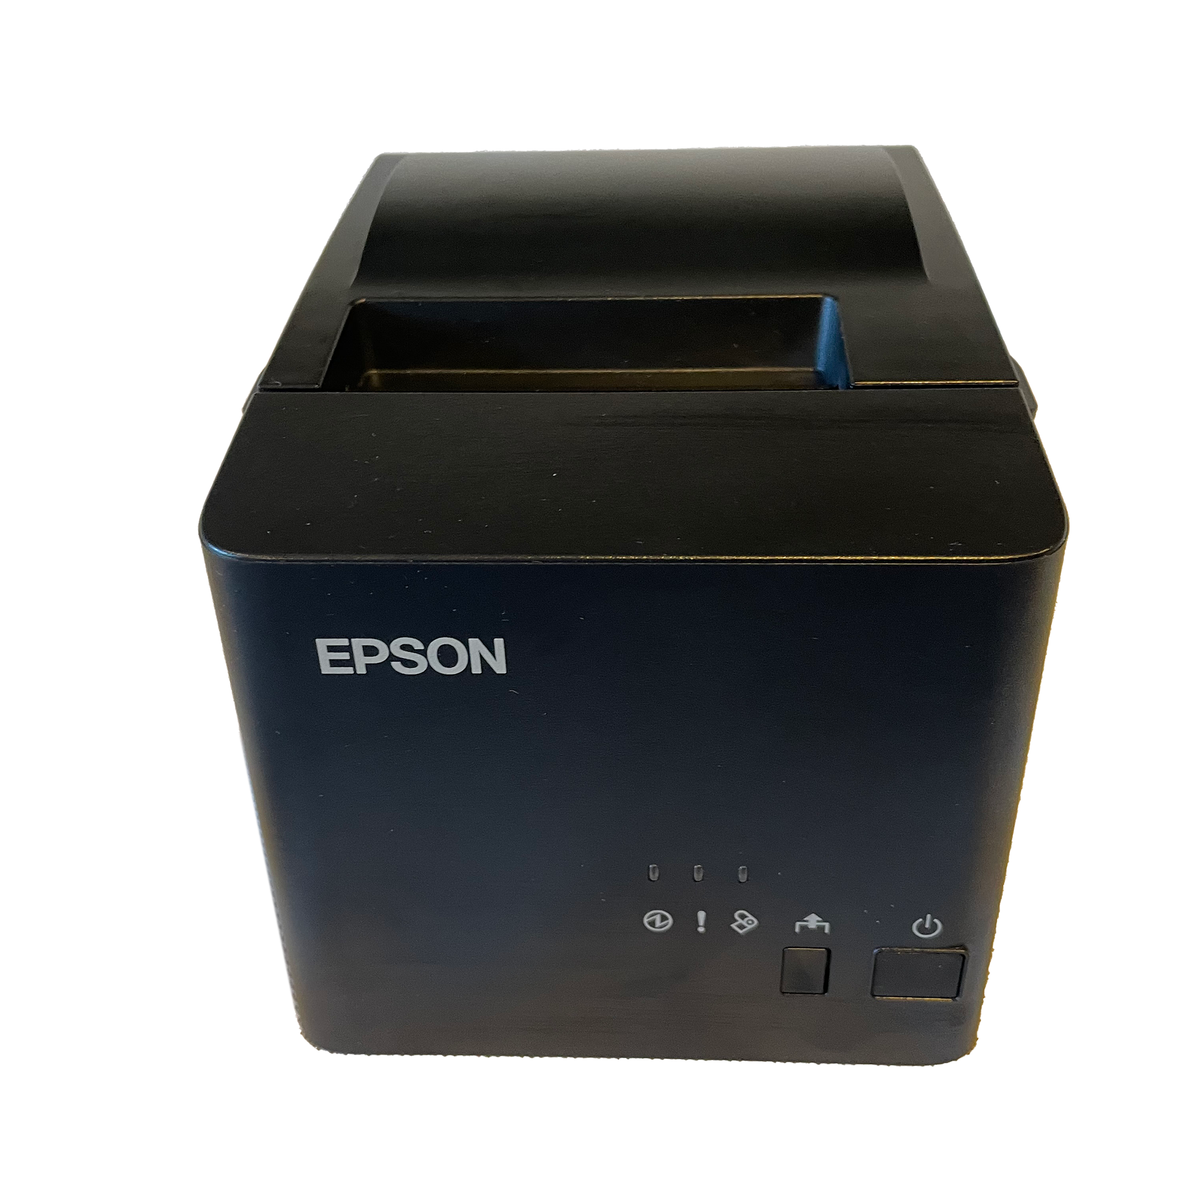 Epson Tm T82iii Usb Receipt Printer For Windows Lightspeed X Series Till Man Nz 0096